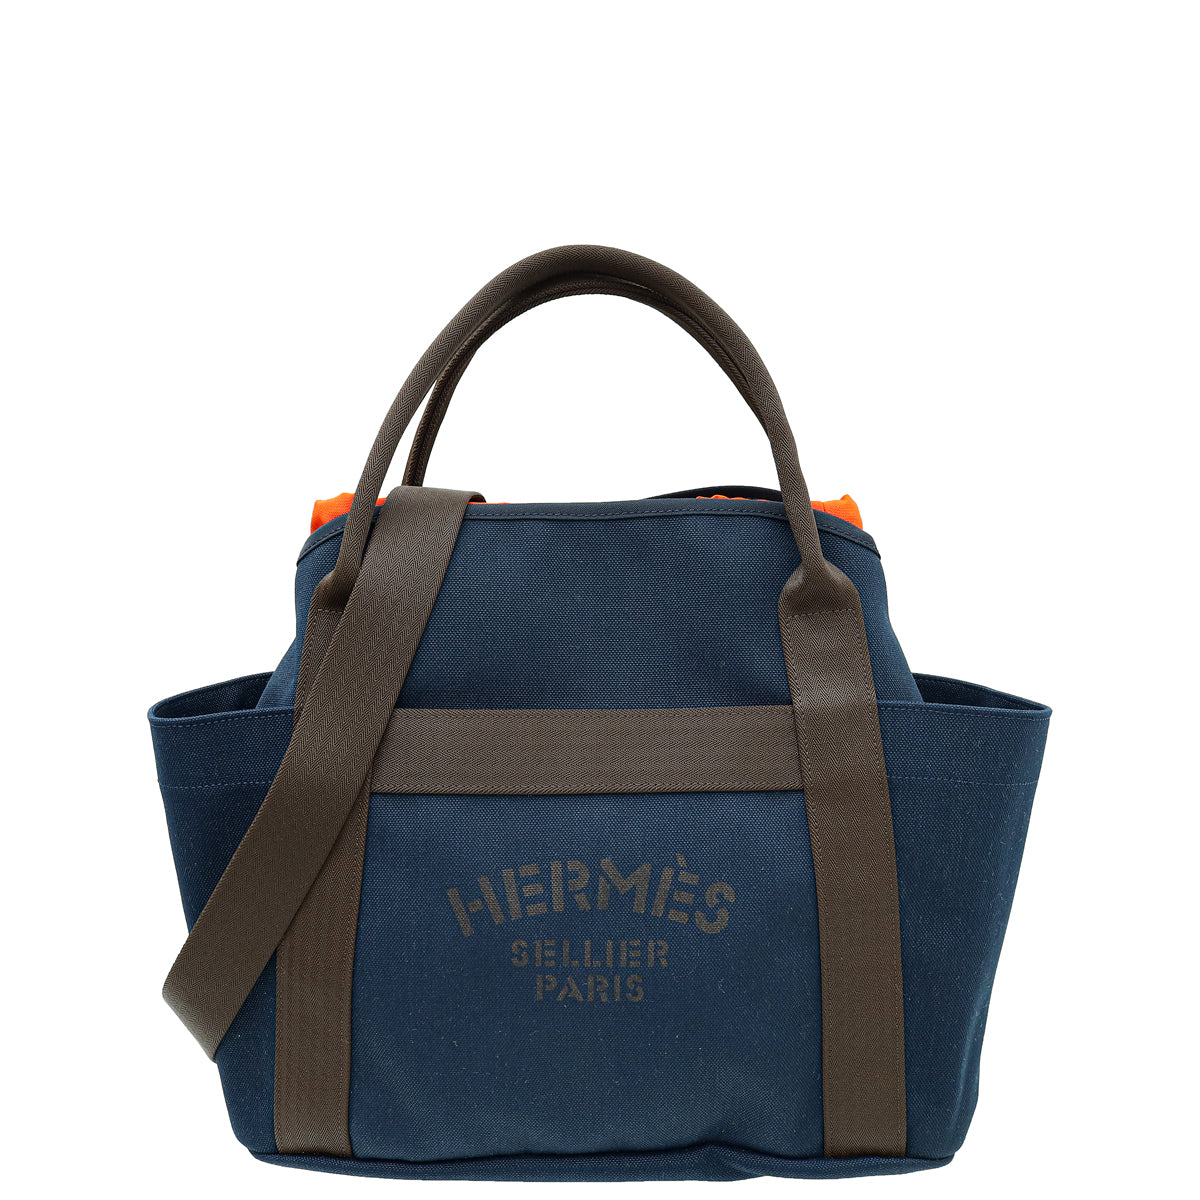 Hermes Bicolor The Grooming Bag